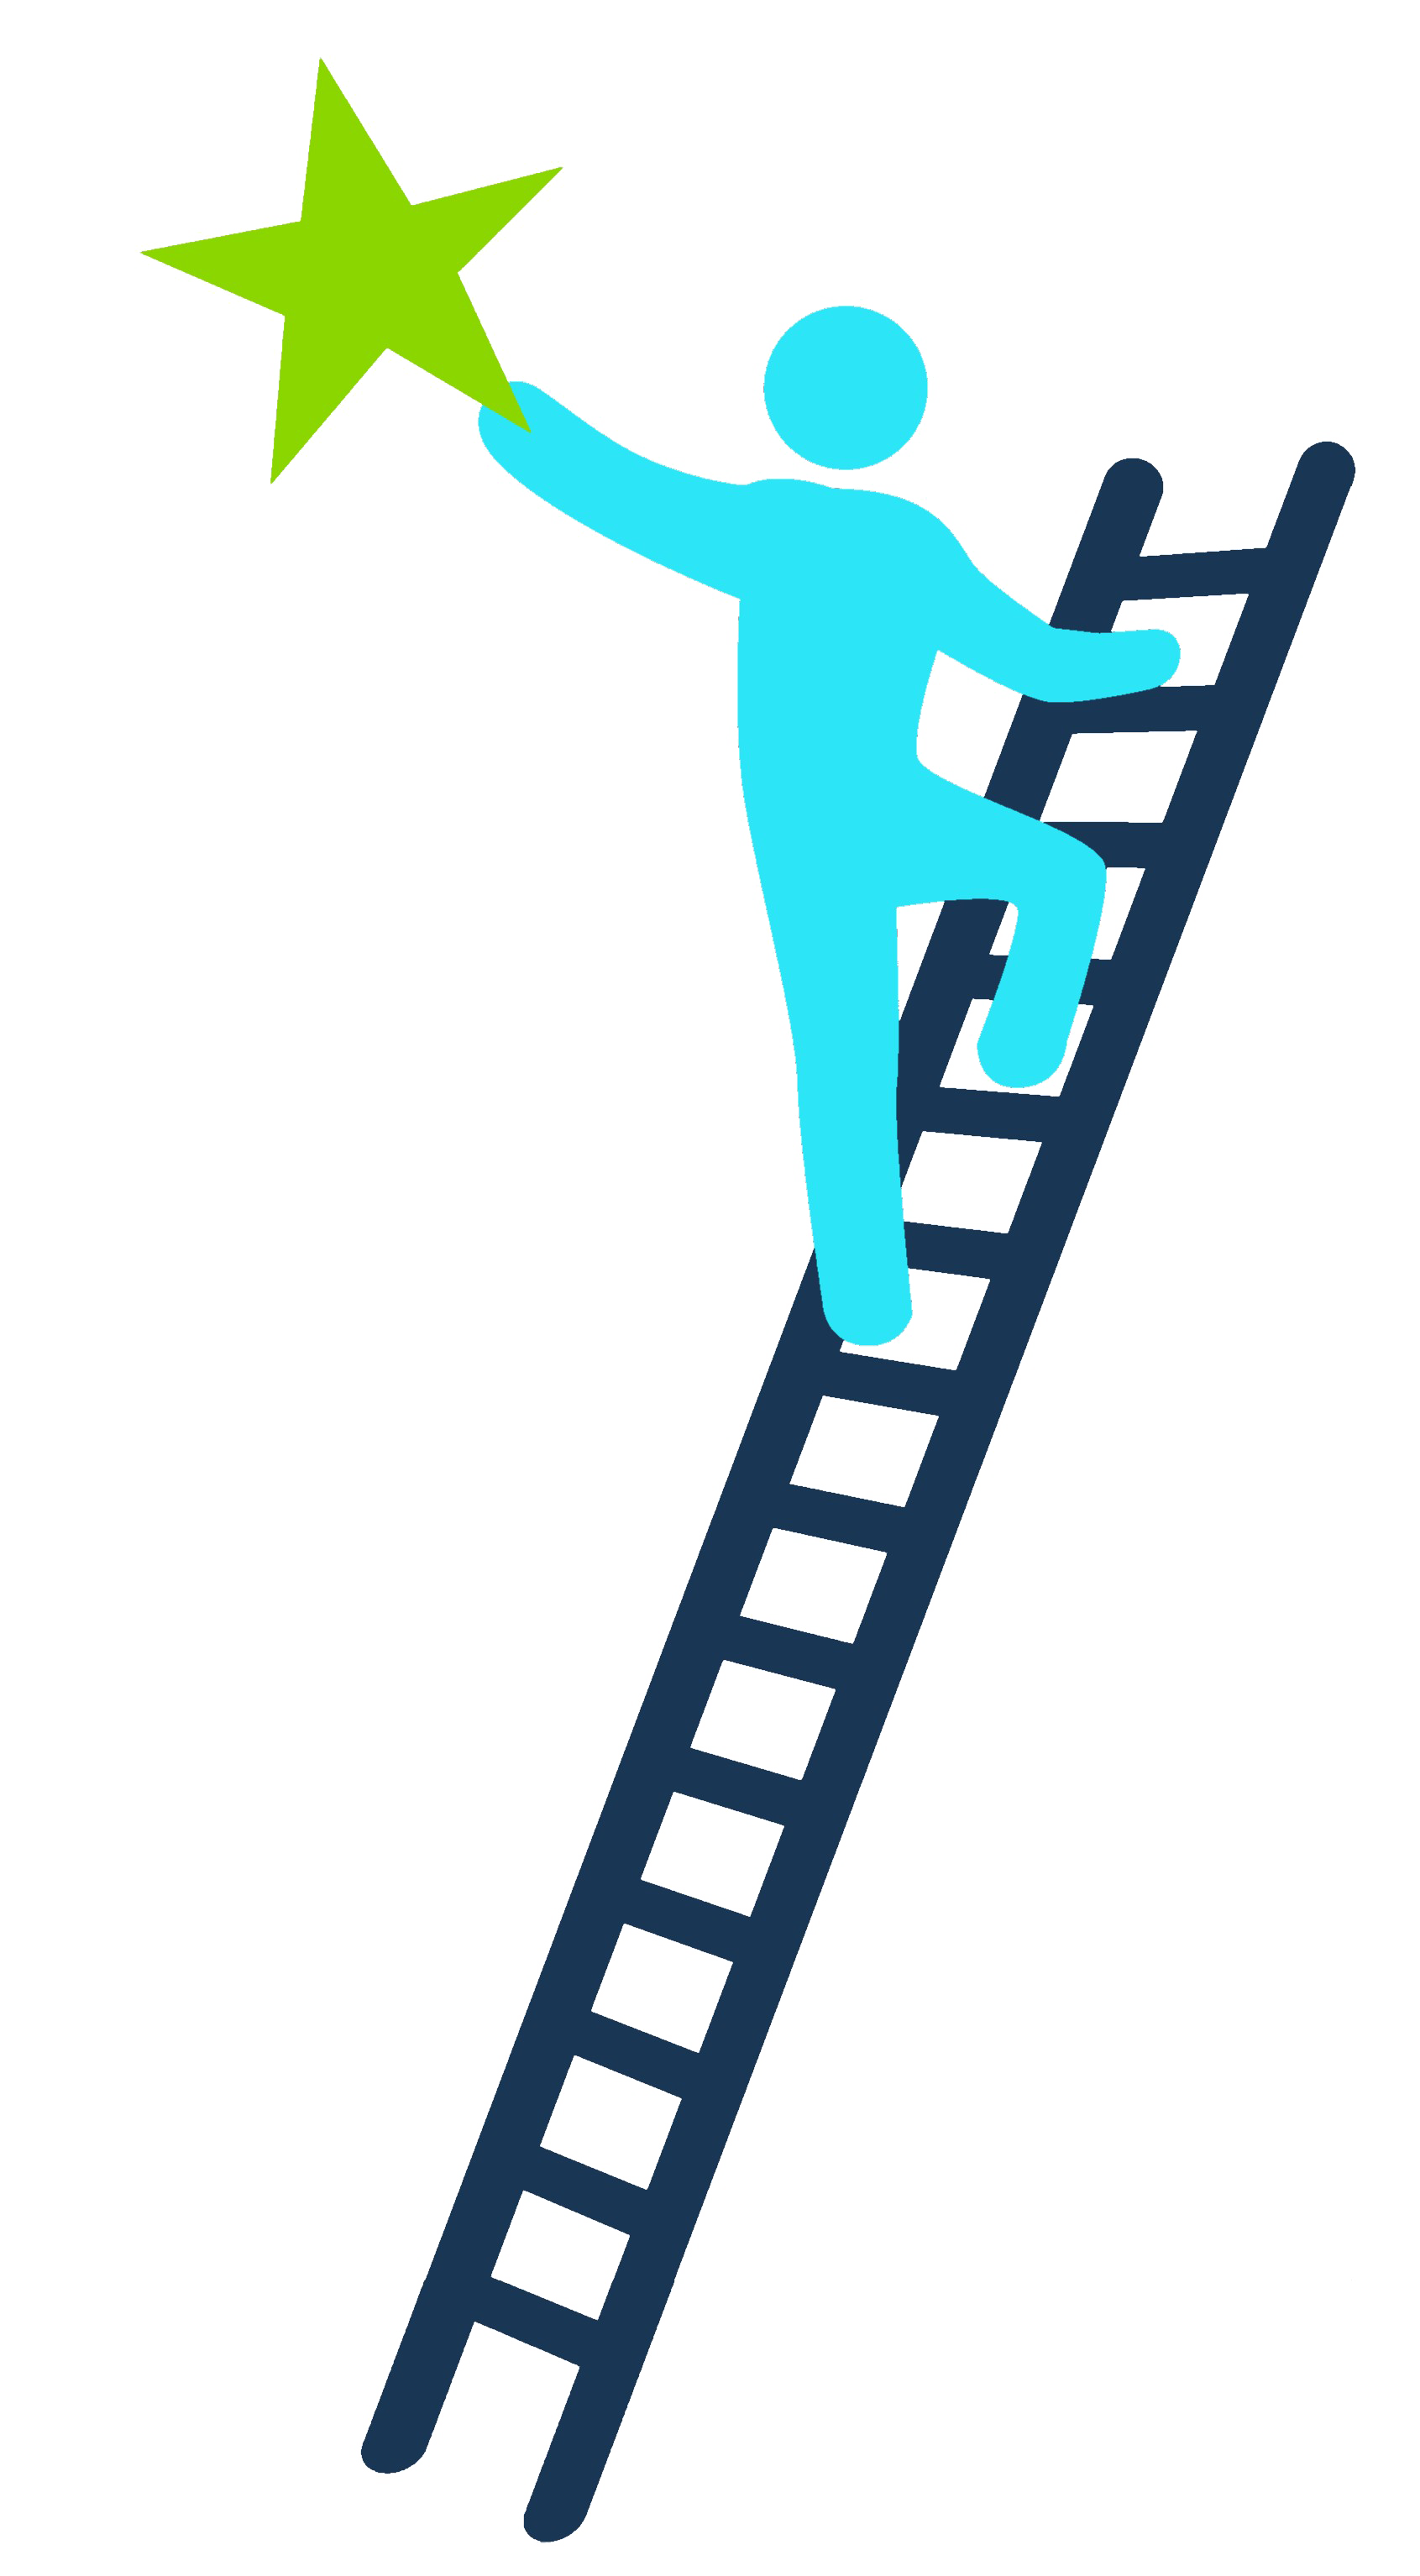 Ladder Of Success PNG Transparent Image